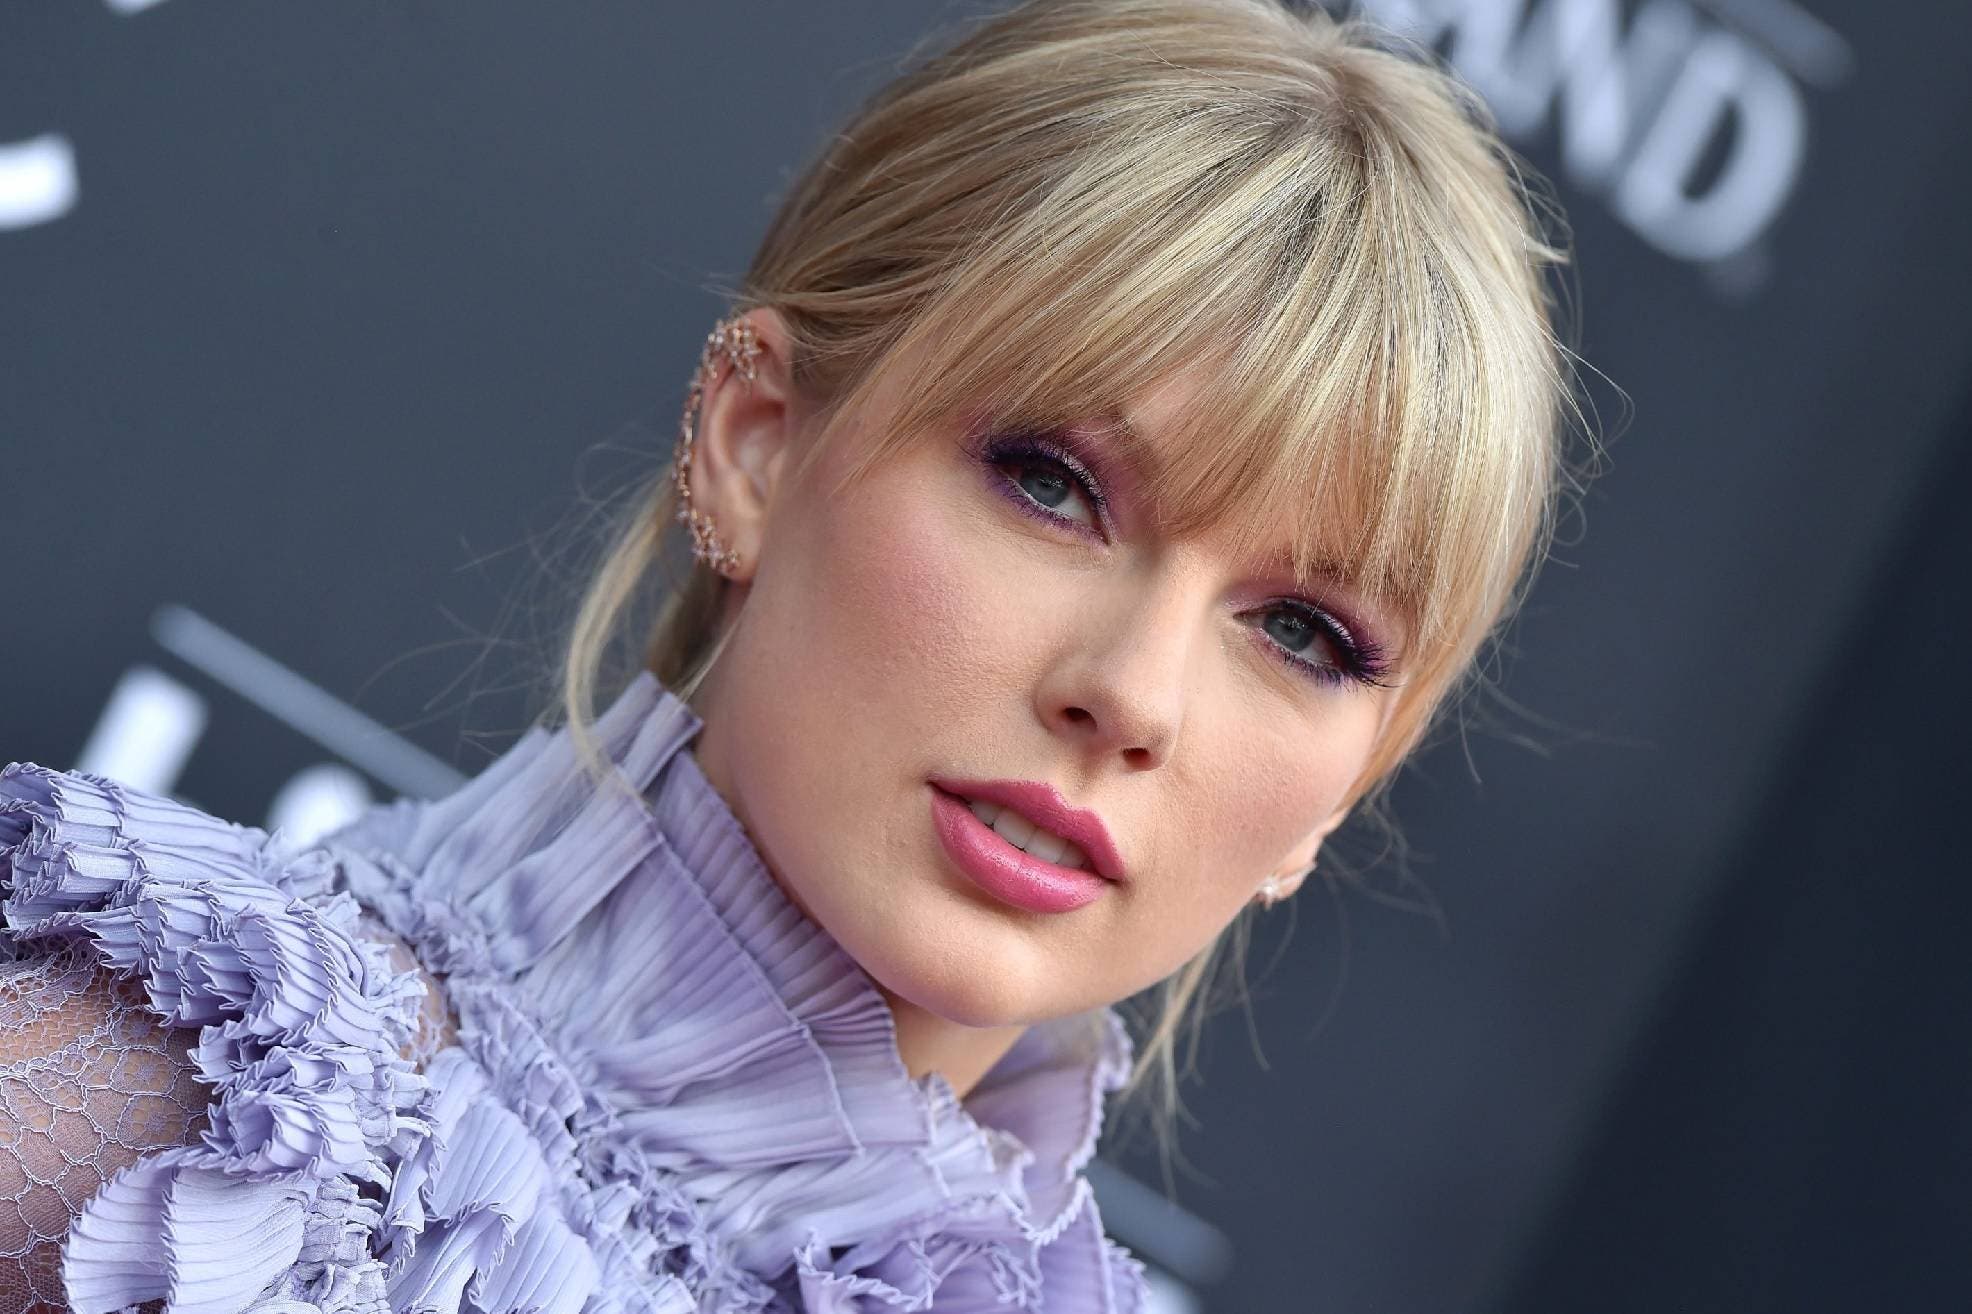 Taylor Swift compone un tema junto a Andrew Lloyd Webber para el filme “Cats»